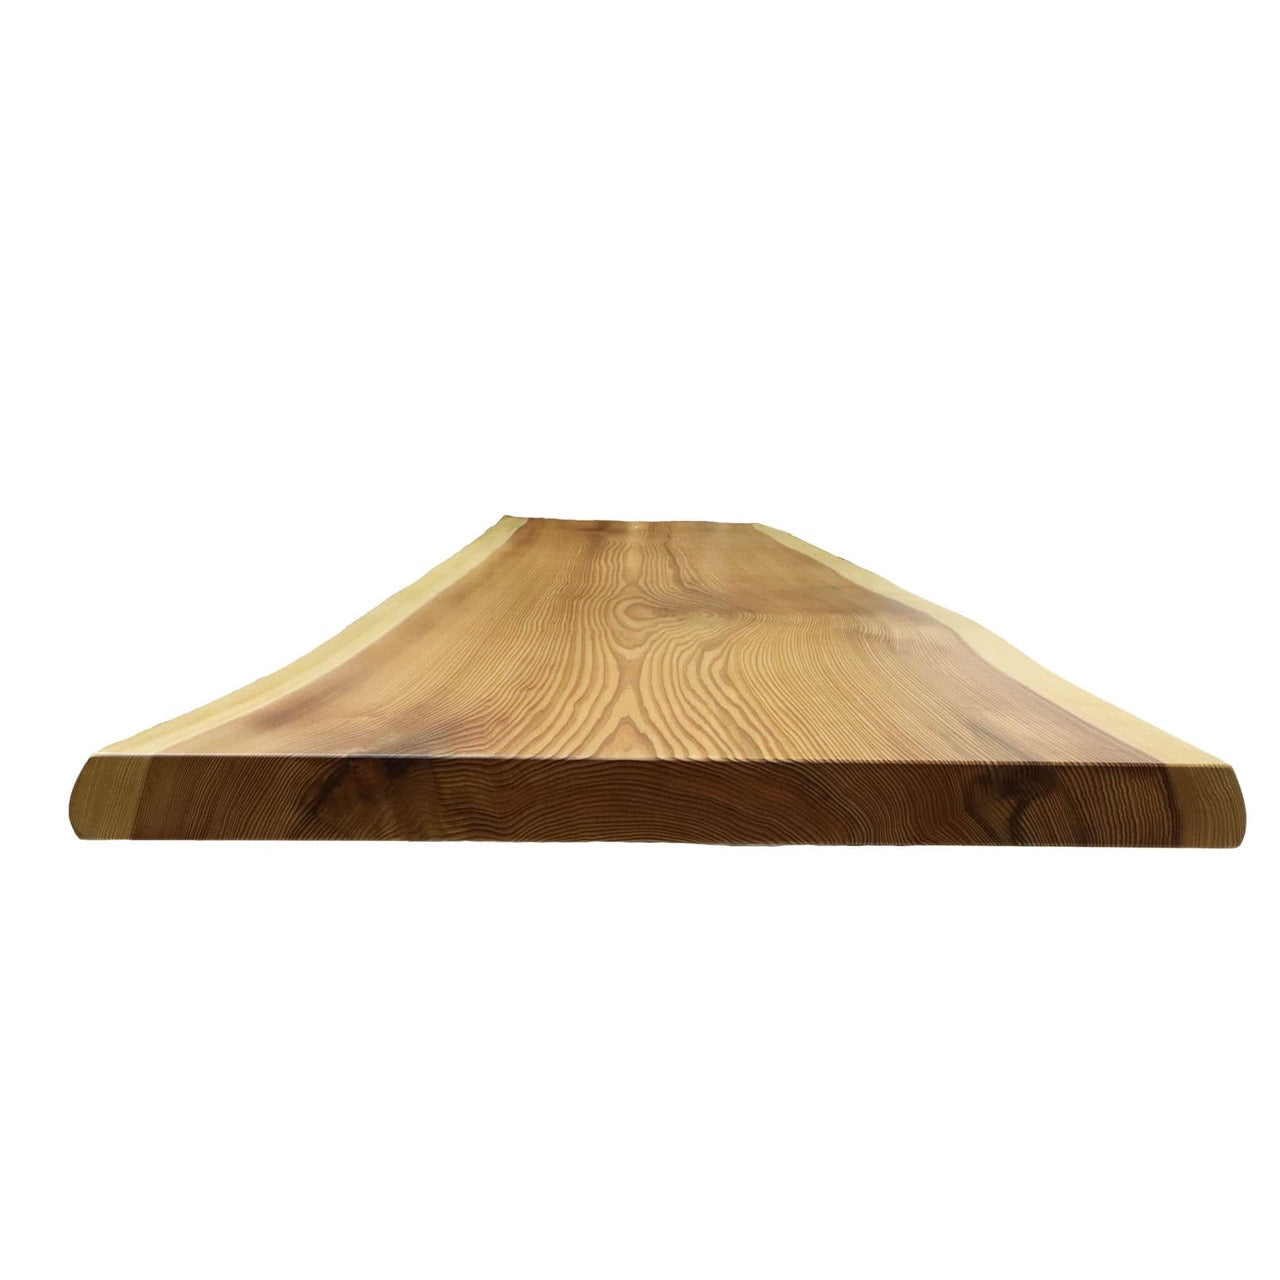 A0008 魚梁瀬杉無垢一枚板 テーブル天板 2,100mm×660mm×55mm